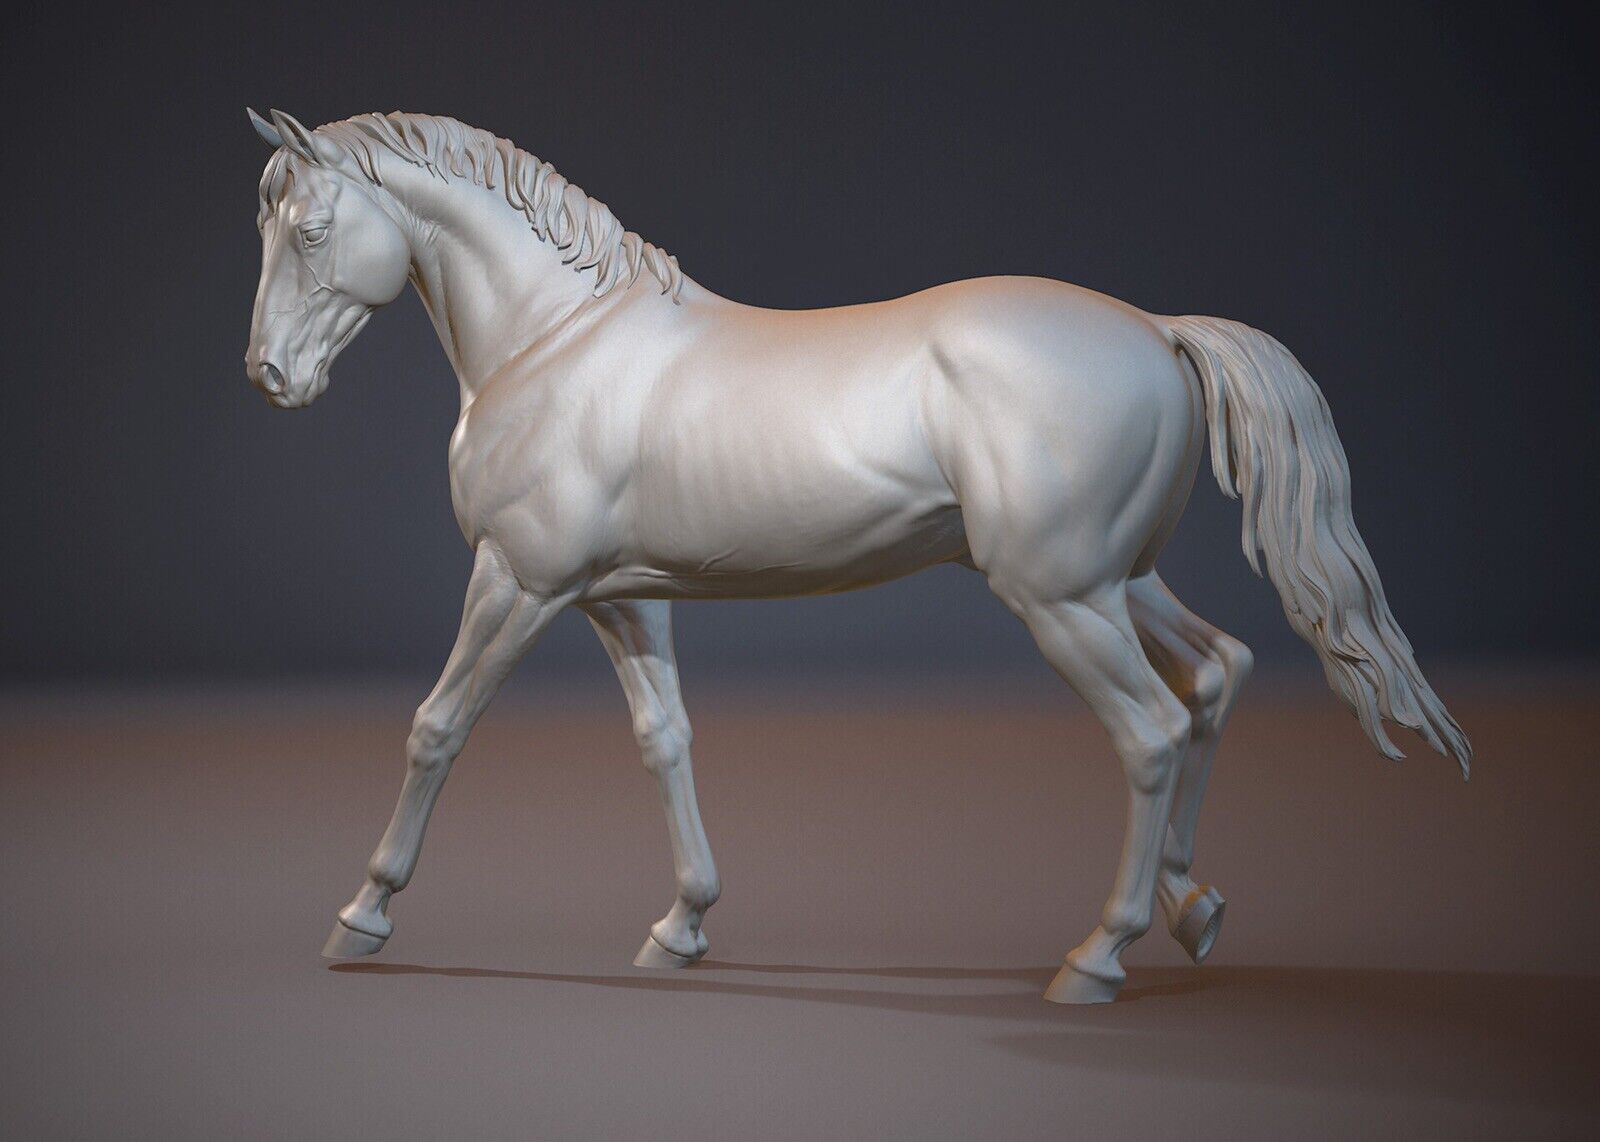 Breyer resin Model Horse Walking Stallion - White Resin Ready To Paint